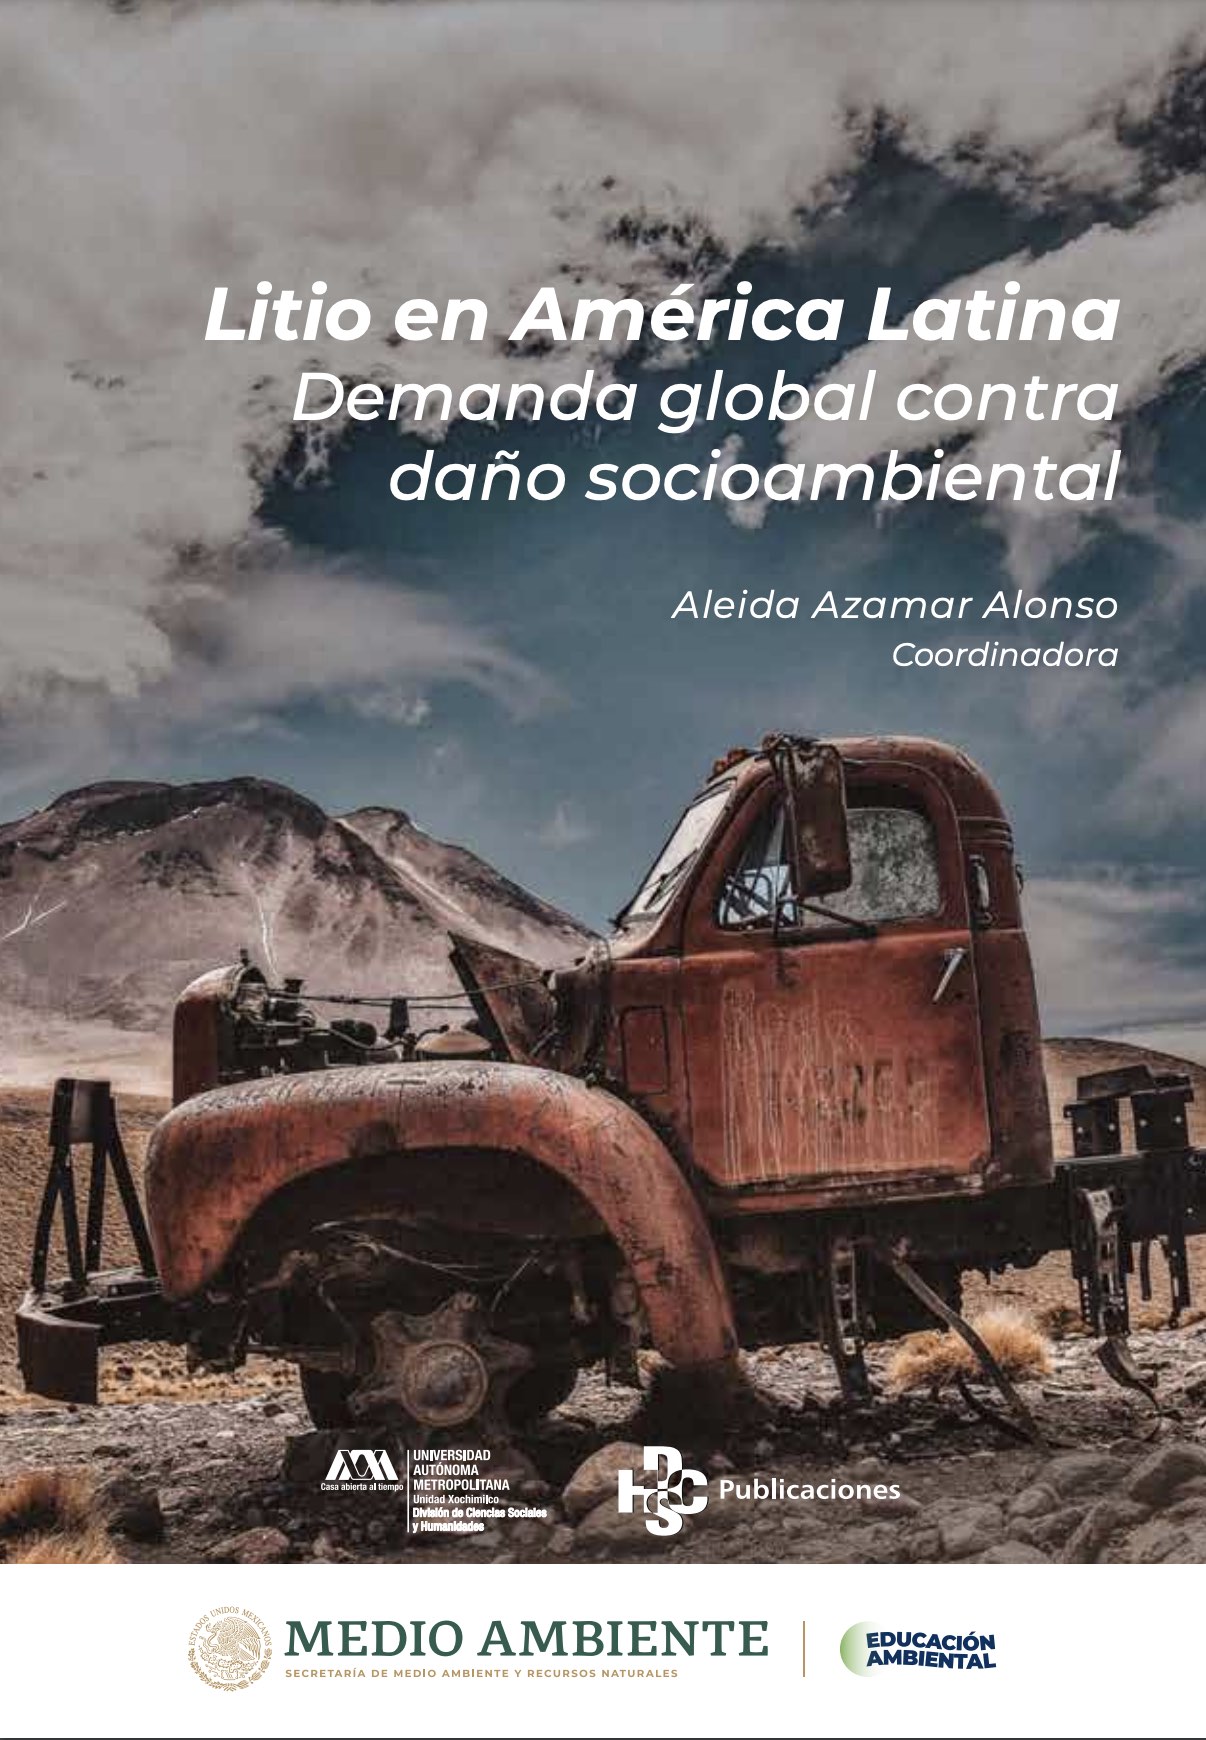 Países de América Latina, esenciales en el fortalecimiento de la industria de litio